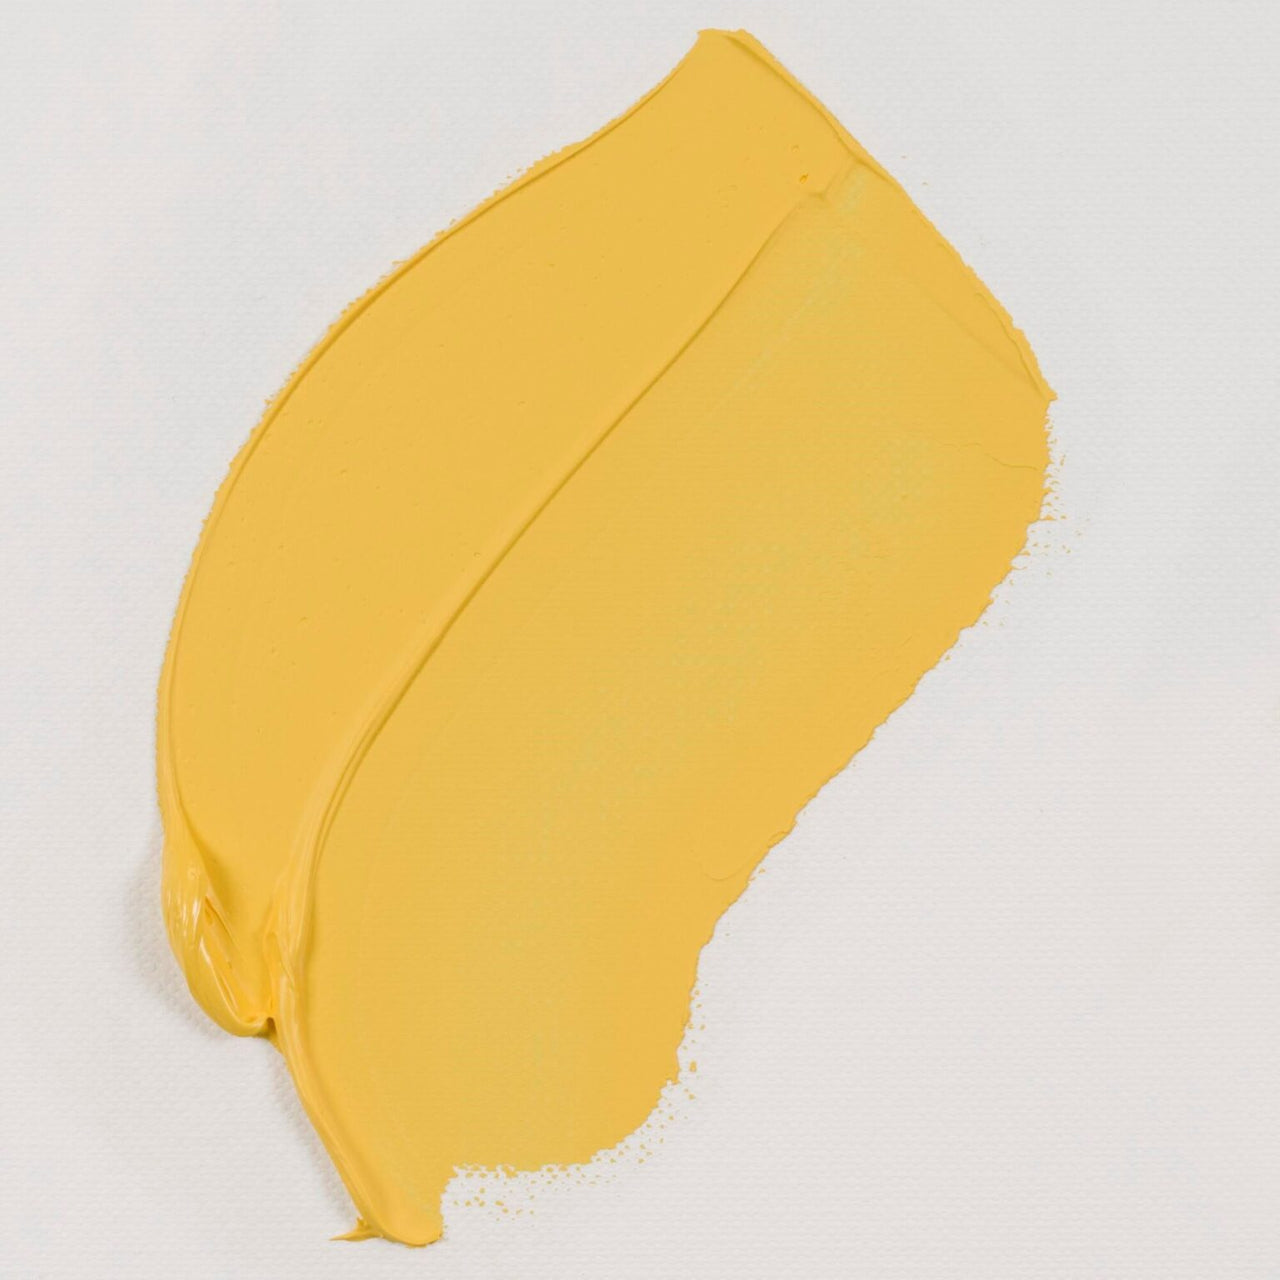 VGO Azo Yellow Lemon 40ml